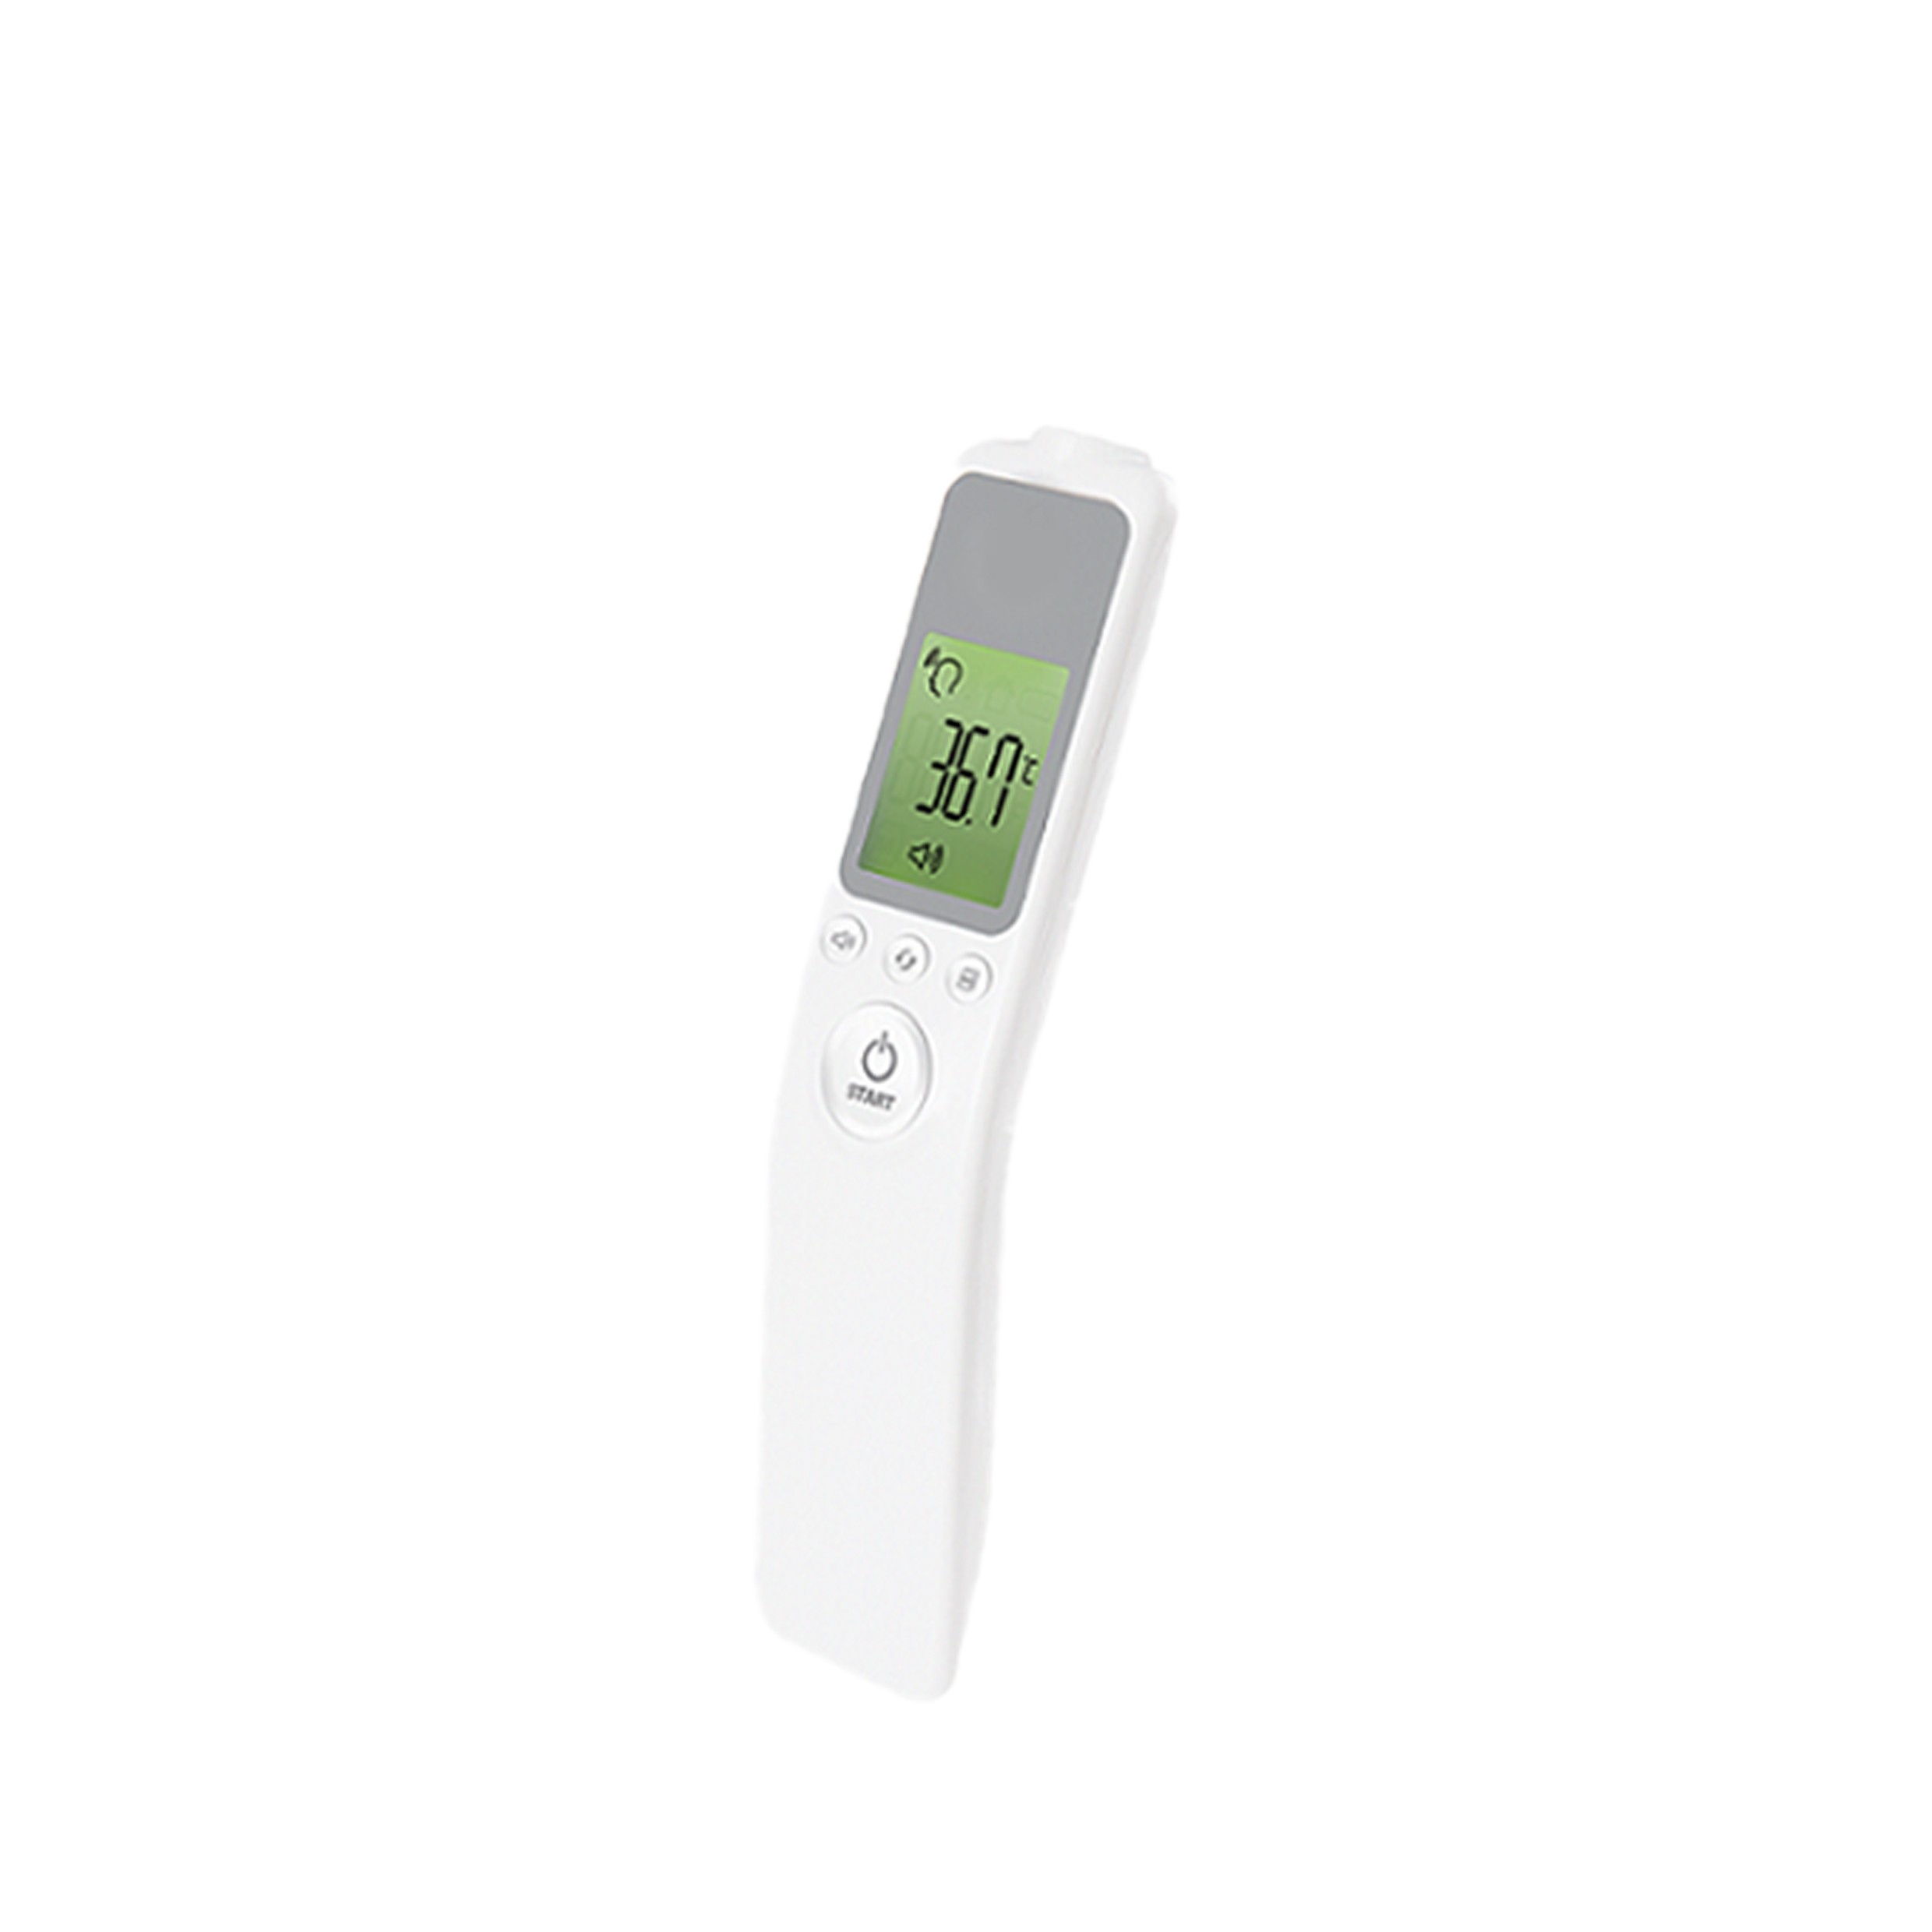 紅外線額溫槍 電子溫度計 體溫槍 測溫儀 偵測溫度 防疫產品